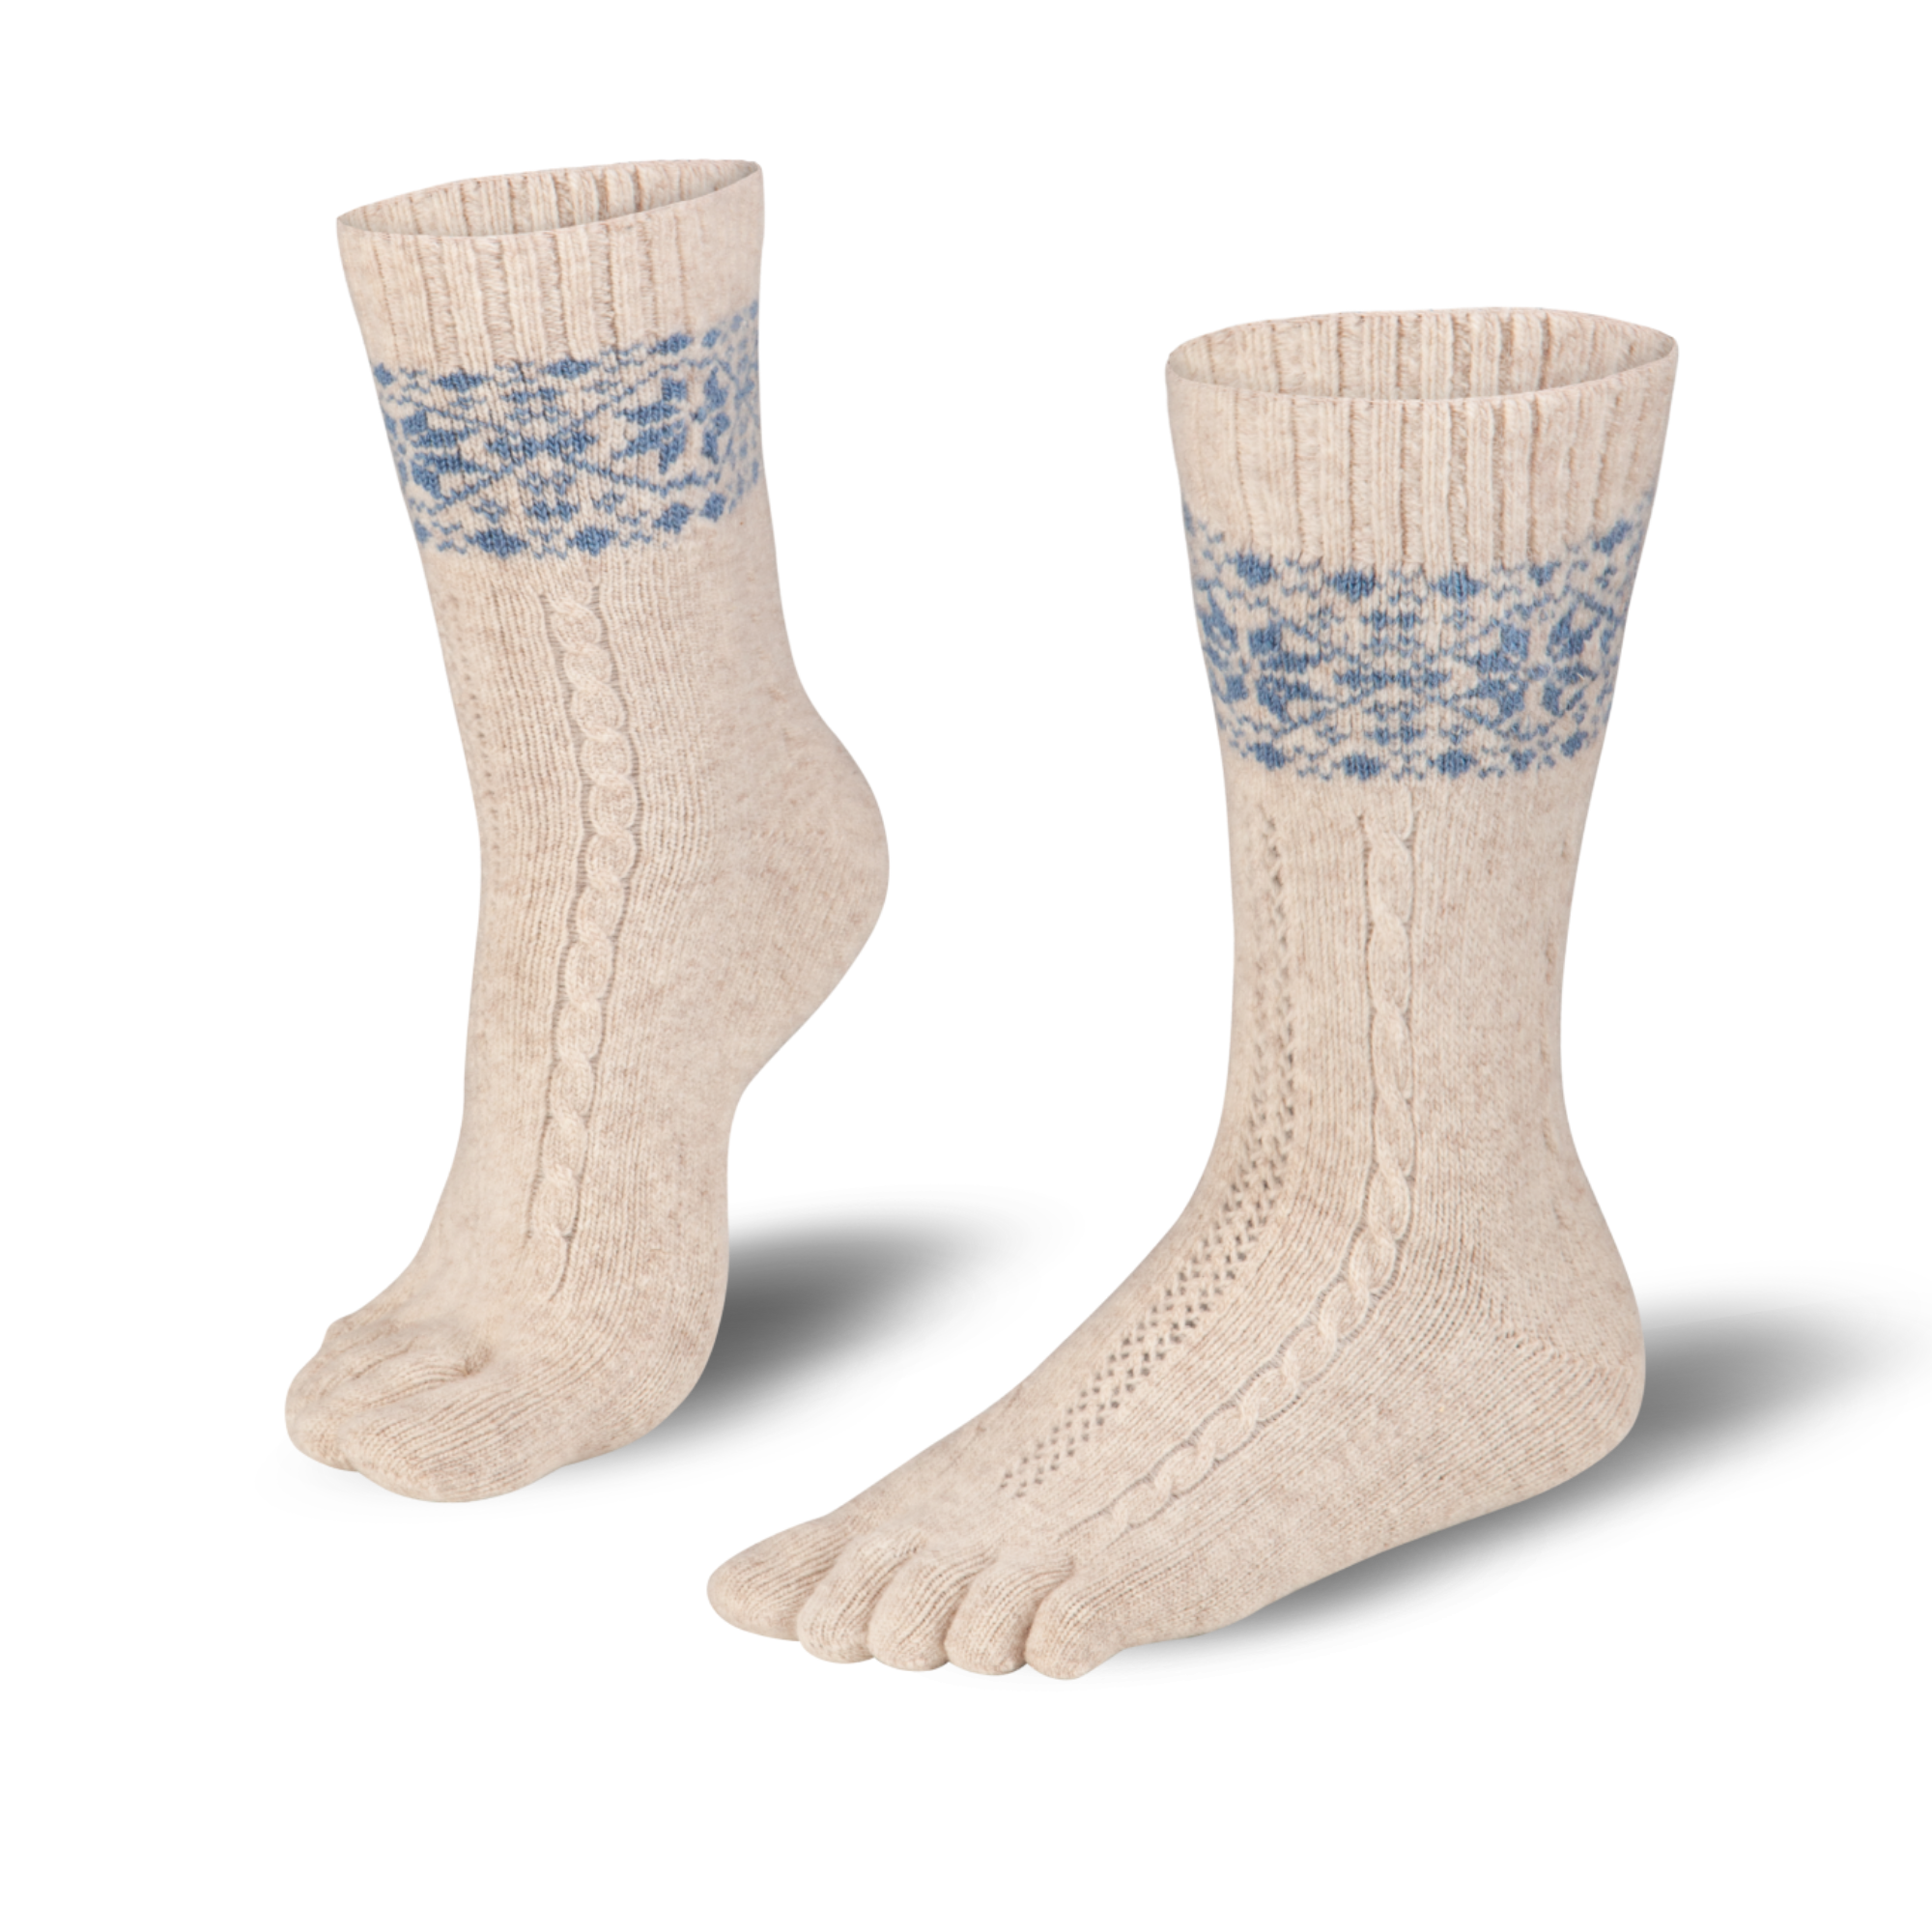  Knitido  chaussettes à orteils chaud en mérinos & cachemire avec motif de taches de neige en beige/bleu clair